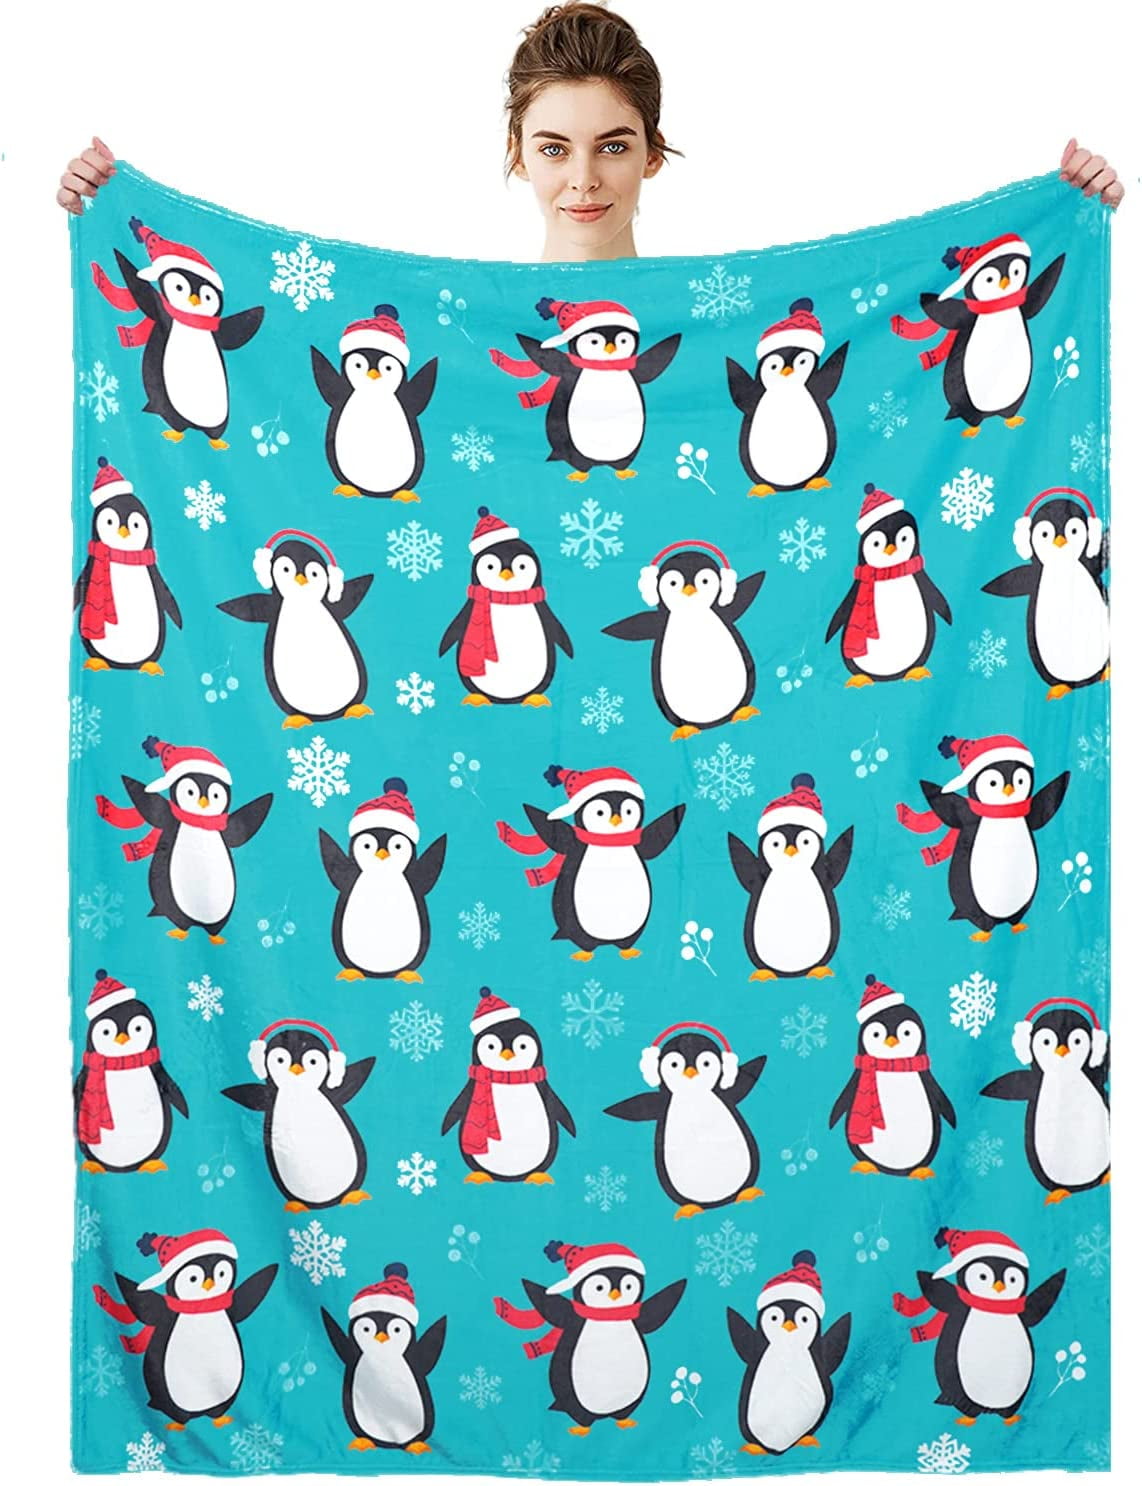 Penguin Blanket 50x60 Adorable Penguin Throw Blanket for Boys